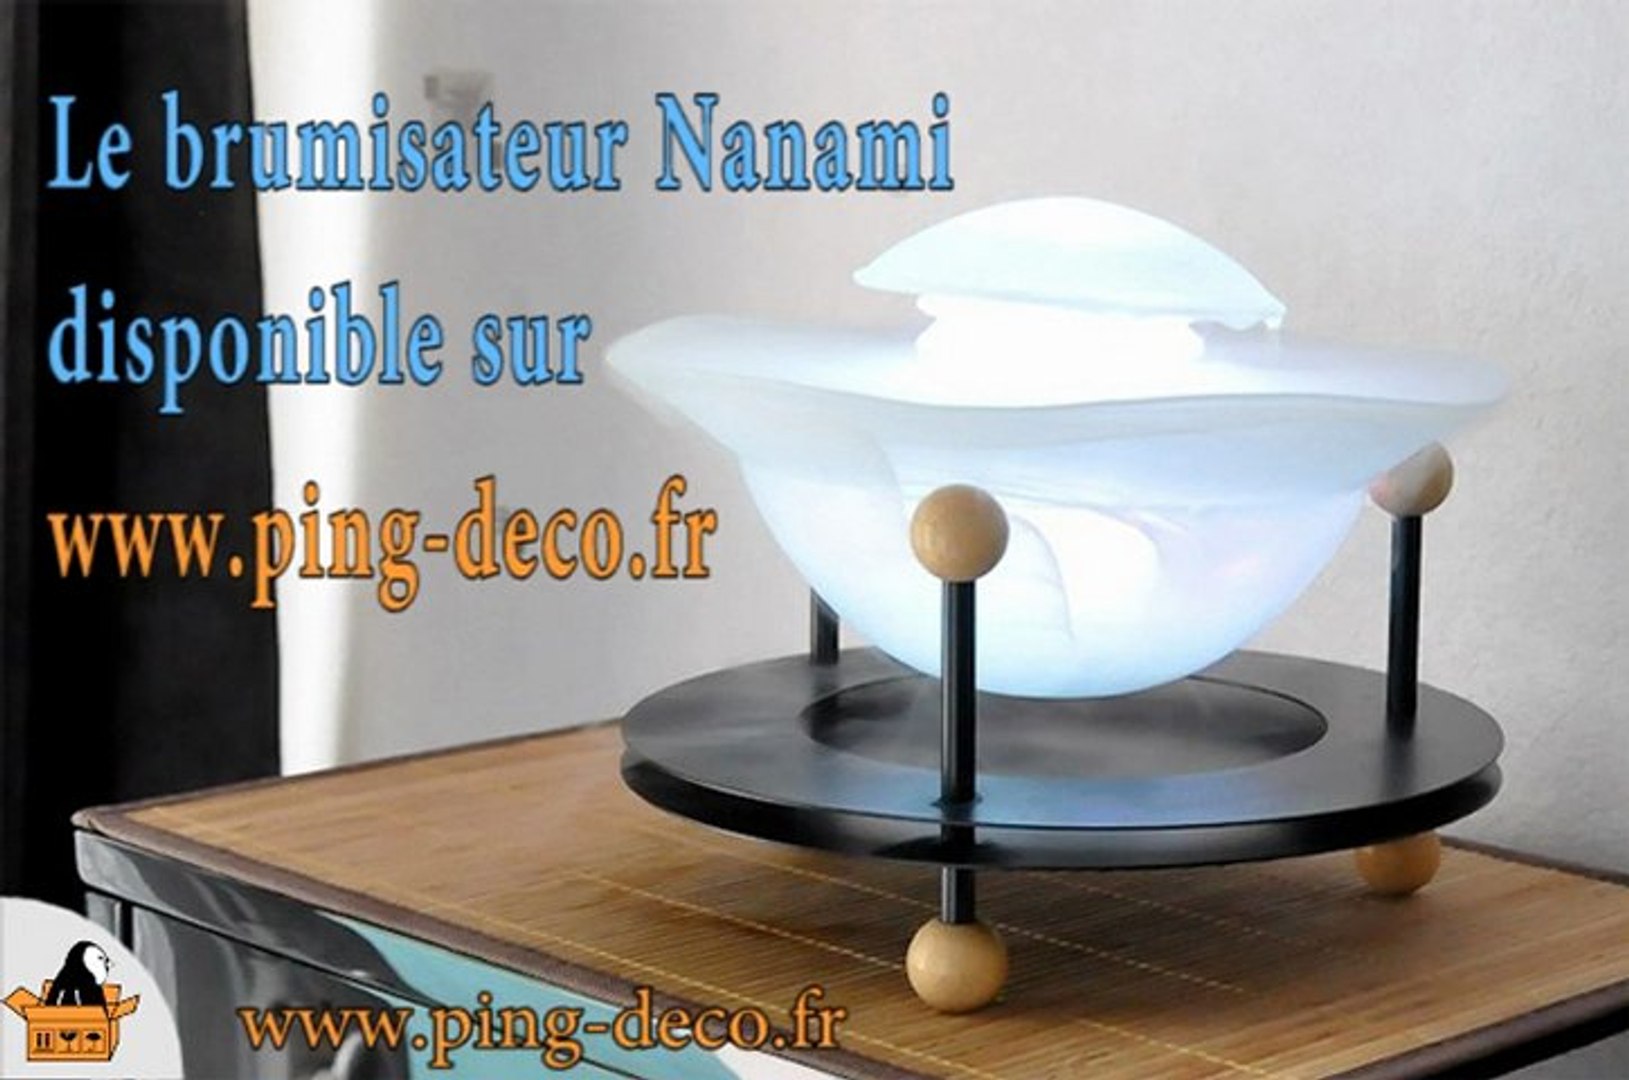 Brumisateur, diffuseur d'huile essentielle NANAMI (disponible sur  www.ping-deco.fr) - Vidéo Dailymotion